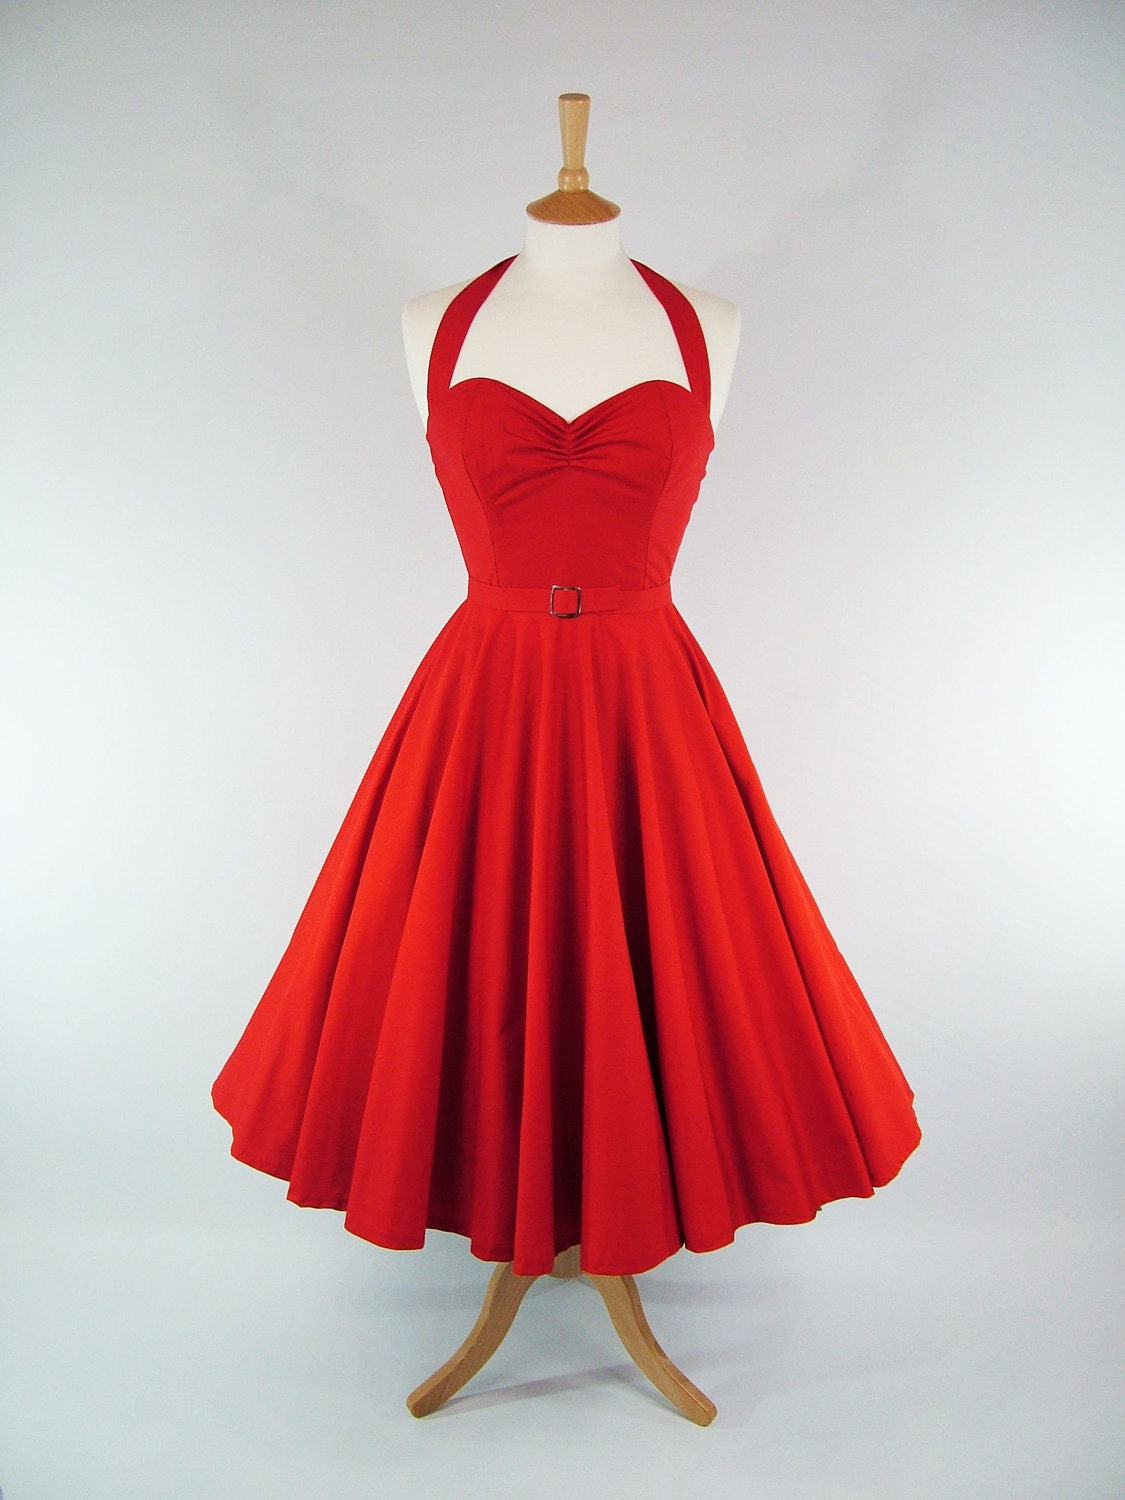 Full Circle Skirt Dress 7